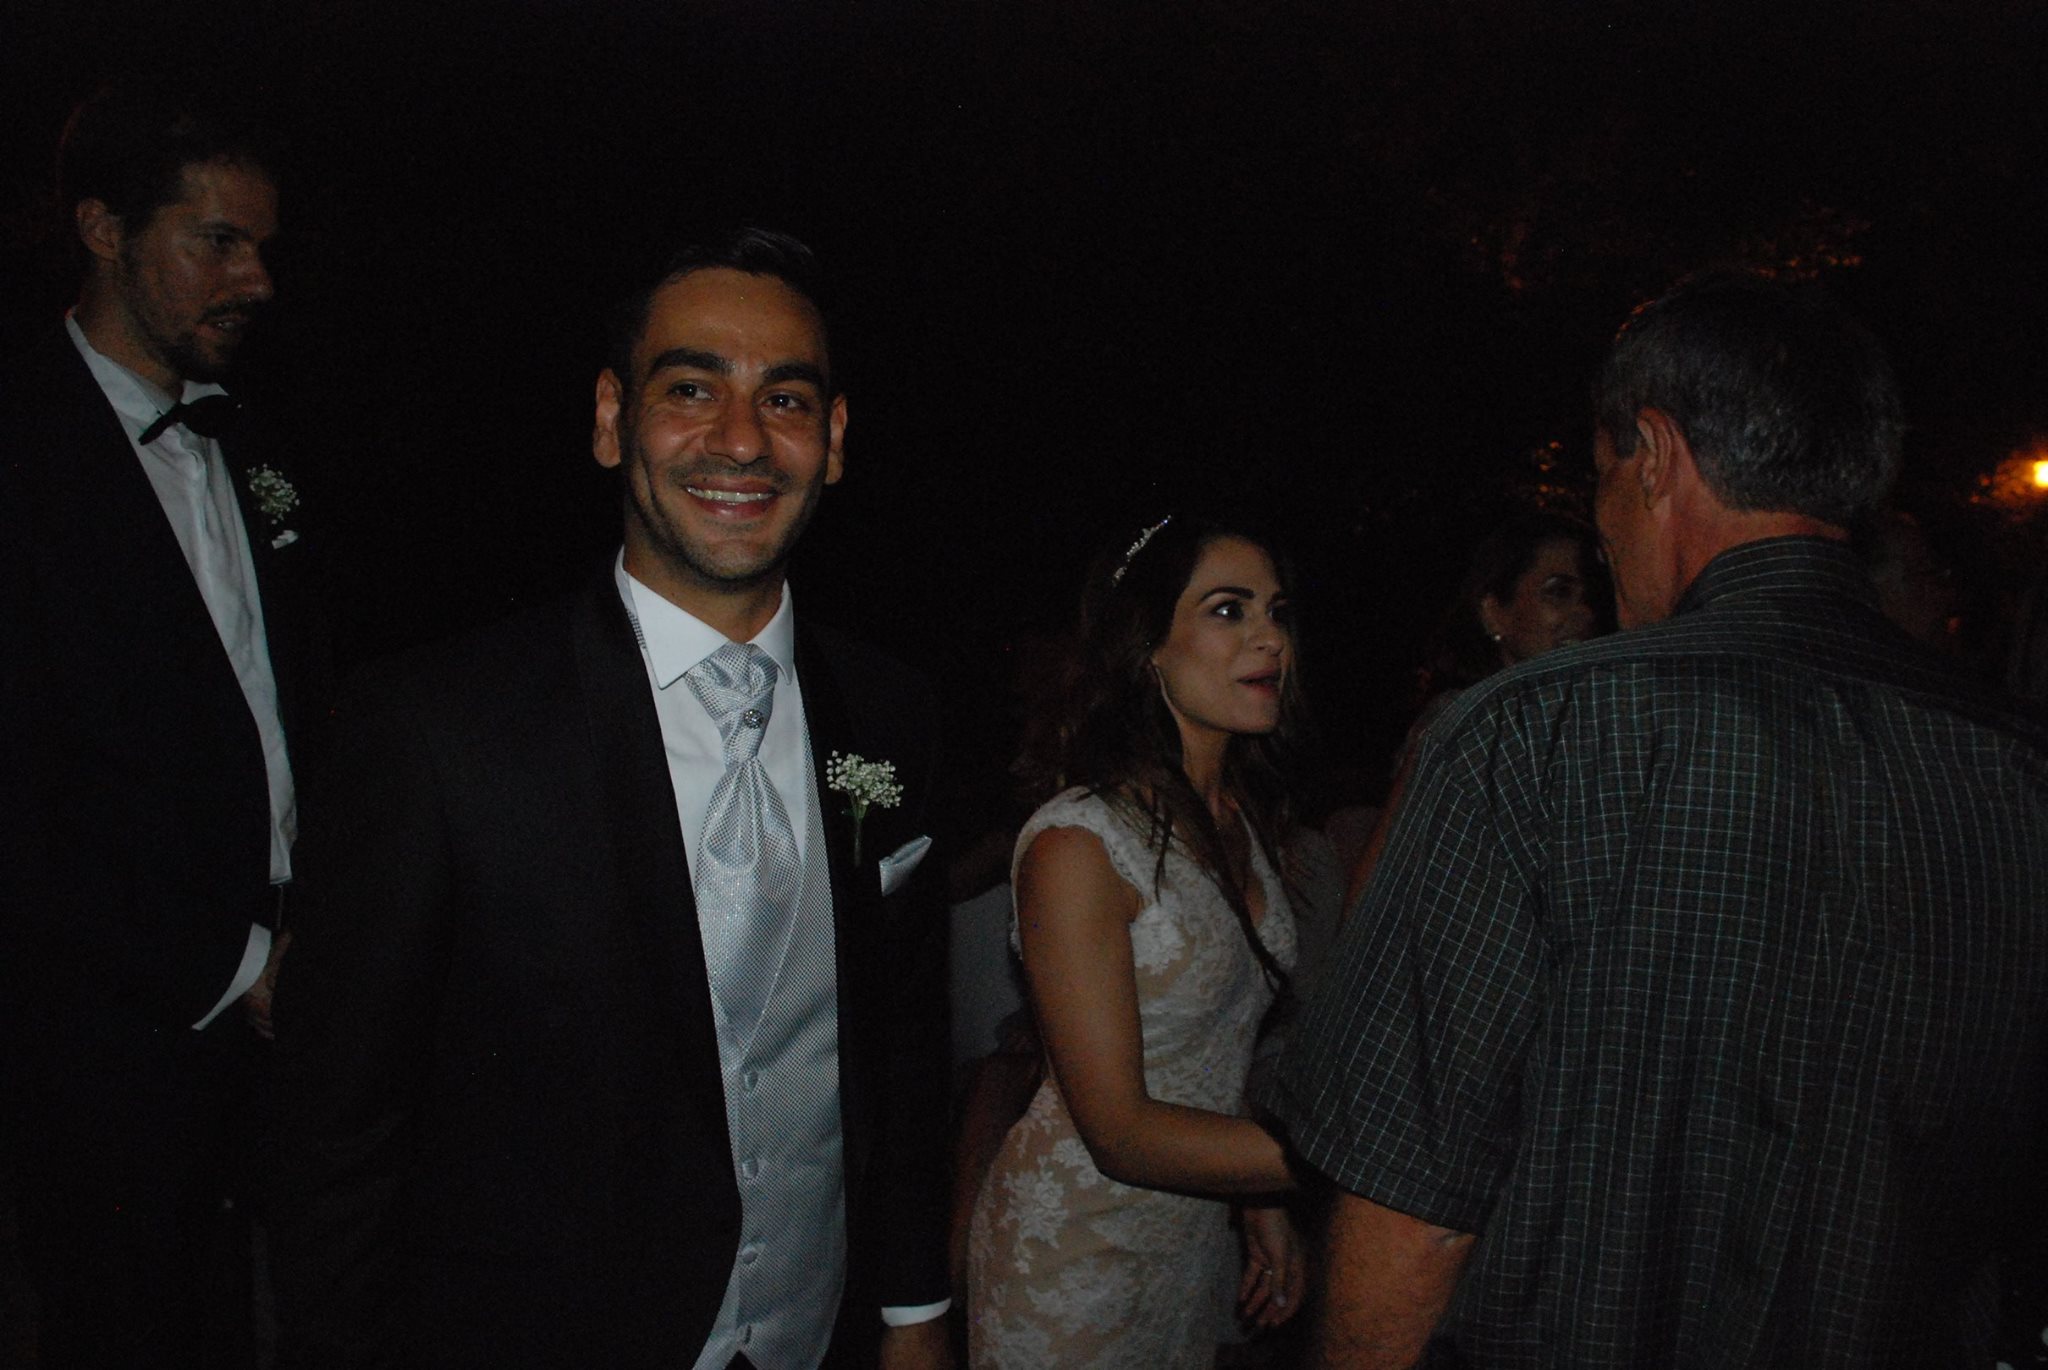 Τσελέπεια 2017! Ο λαμπερός γάμος του Κύπριου ηθοποιού! – ΦΩΤΟΓΡΑΦΙΕΣ